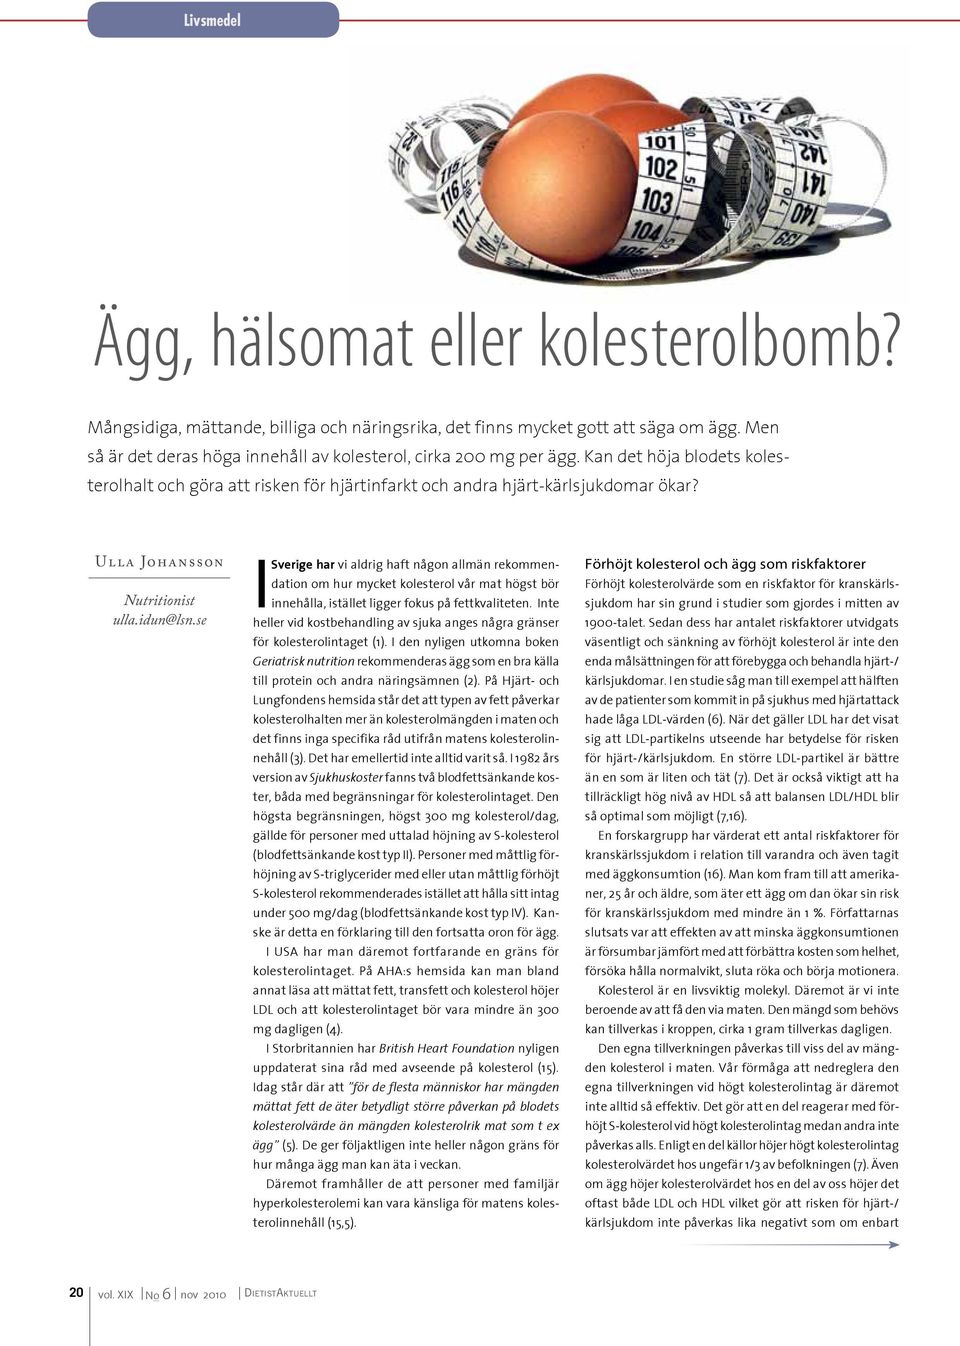 Ull a Johansson Nutritionist ulla.idun@lsn.se I Sverige har vi aldrig haft någon allmän rekommendation om hur mycket kolesterol vår mat högst bör innehålla, istället ligger fokus på fettkvaliteten.